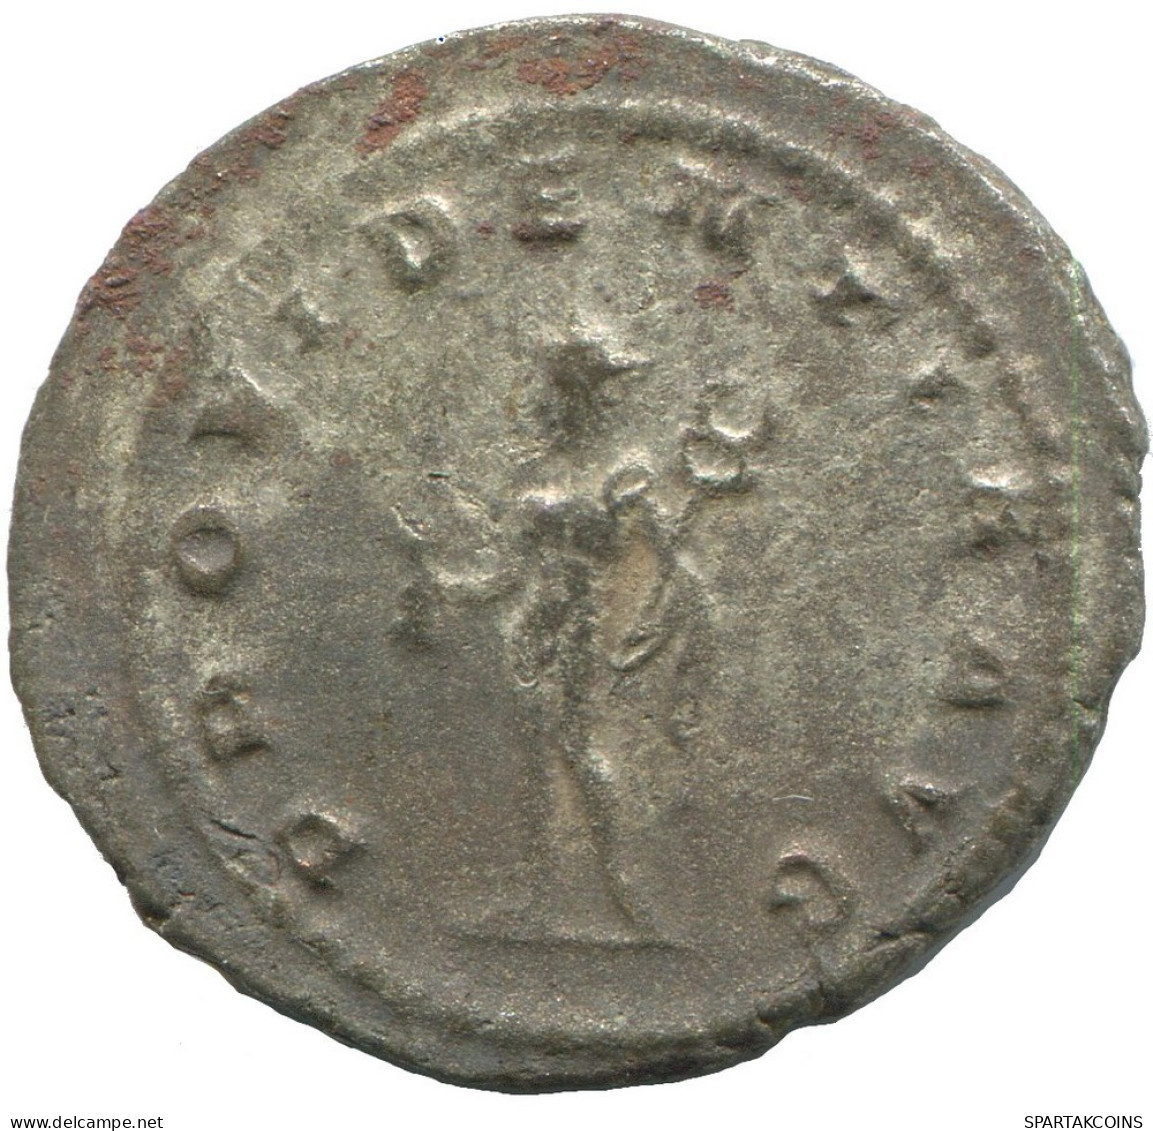 GALLIENUS ANTIOCH AD266-269 SILVERED LATE ROMAN Moneda 3.9g/24mm #ANT2724.41.E.A - Der Soldatenkaiser (die Militärkrise) (235 / 284)